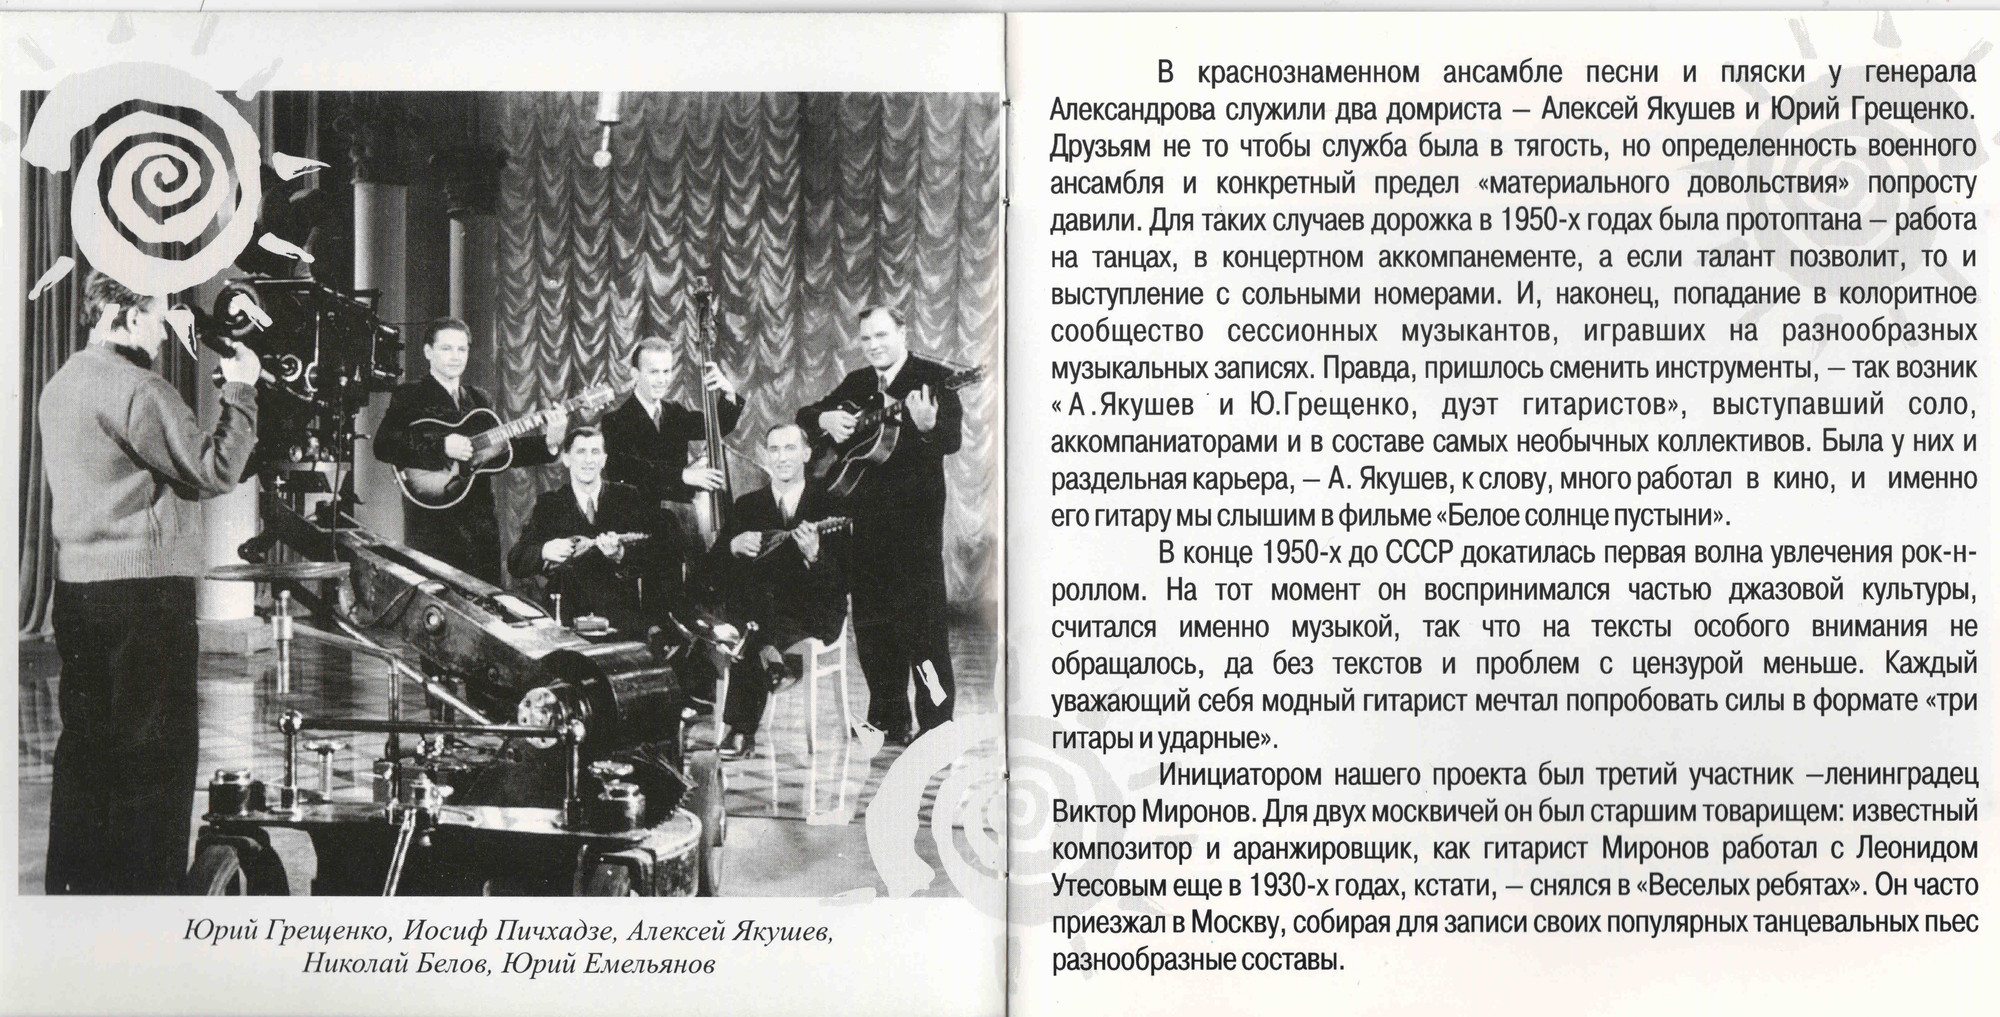 Вечное солнце. Московское трио гитаристов (из серии "Подлинная история отечественной лёгкой музыки")